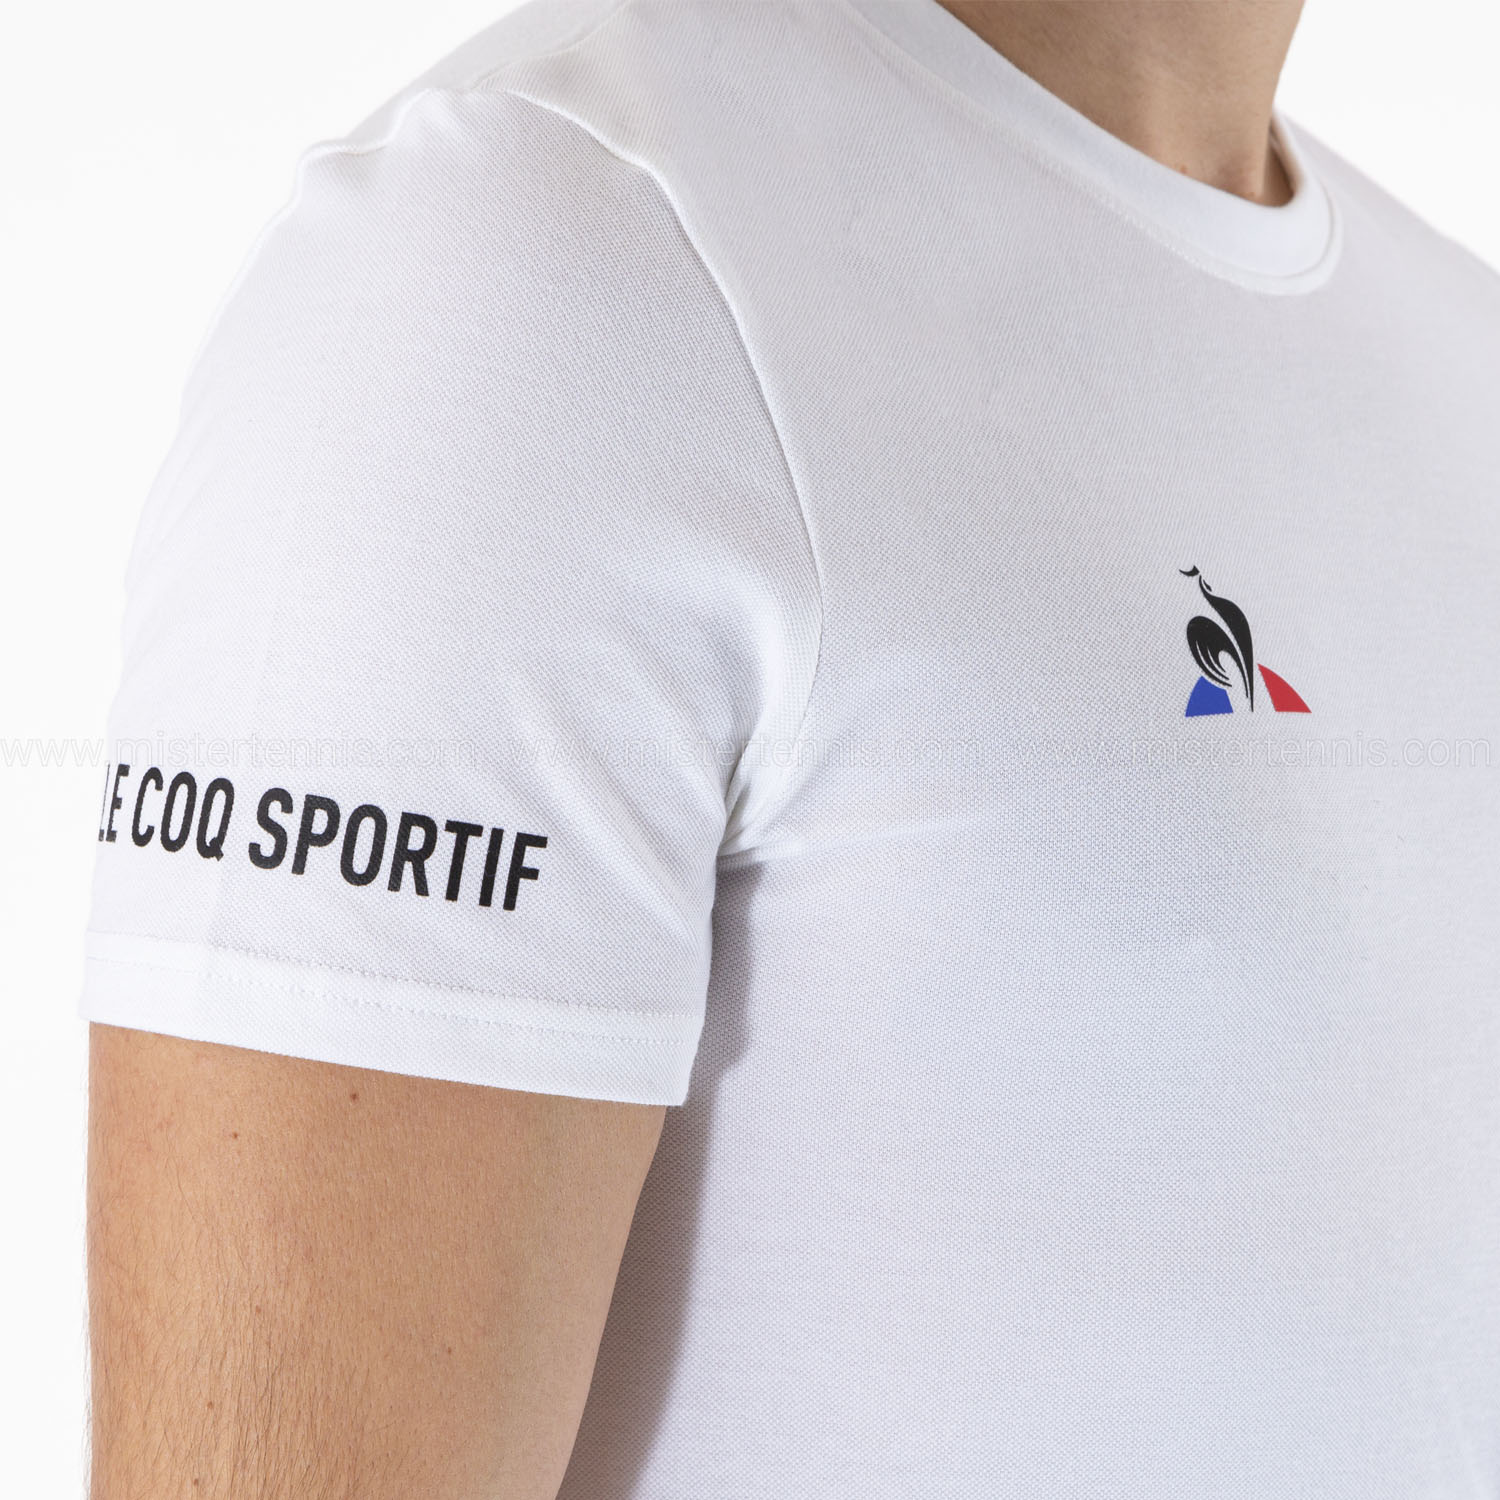 Le Coq Sportif Logo Maglietta - New Optical White